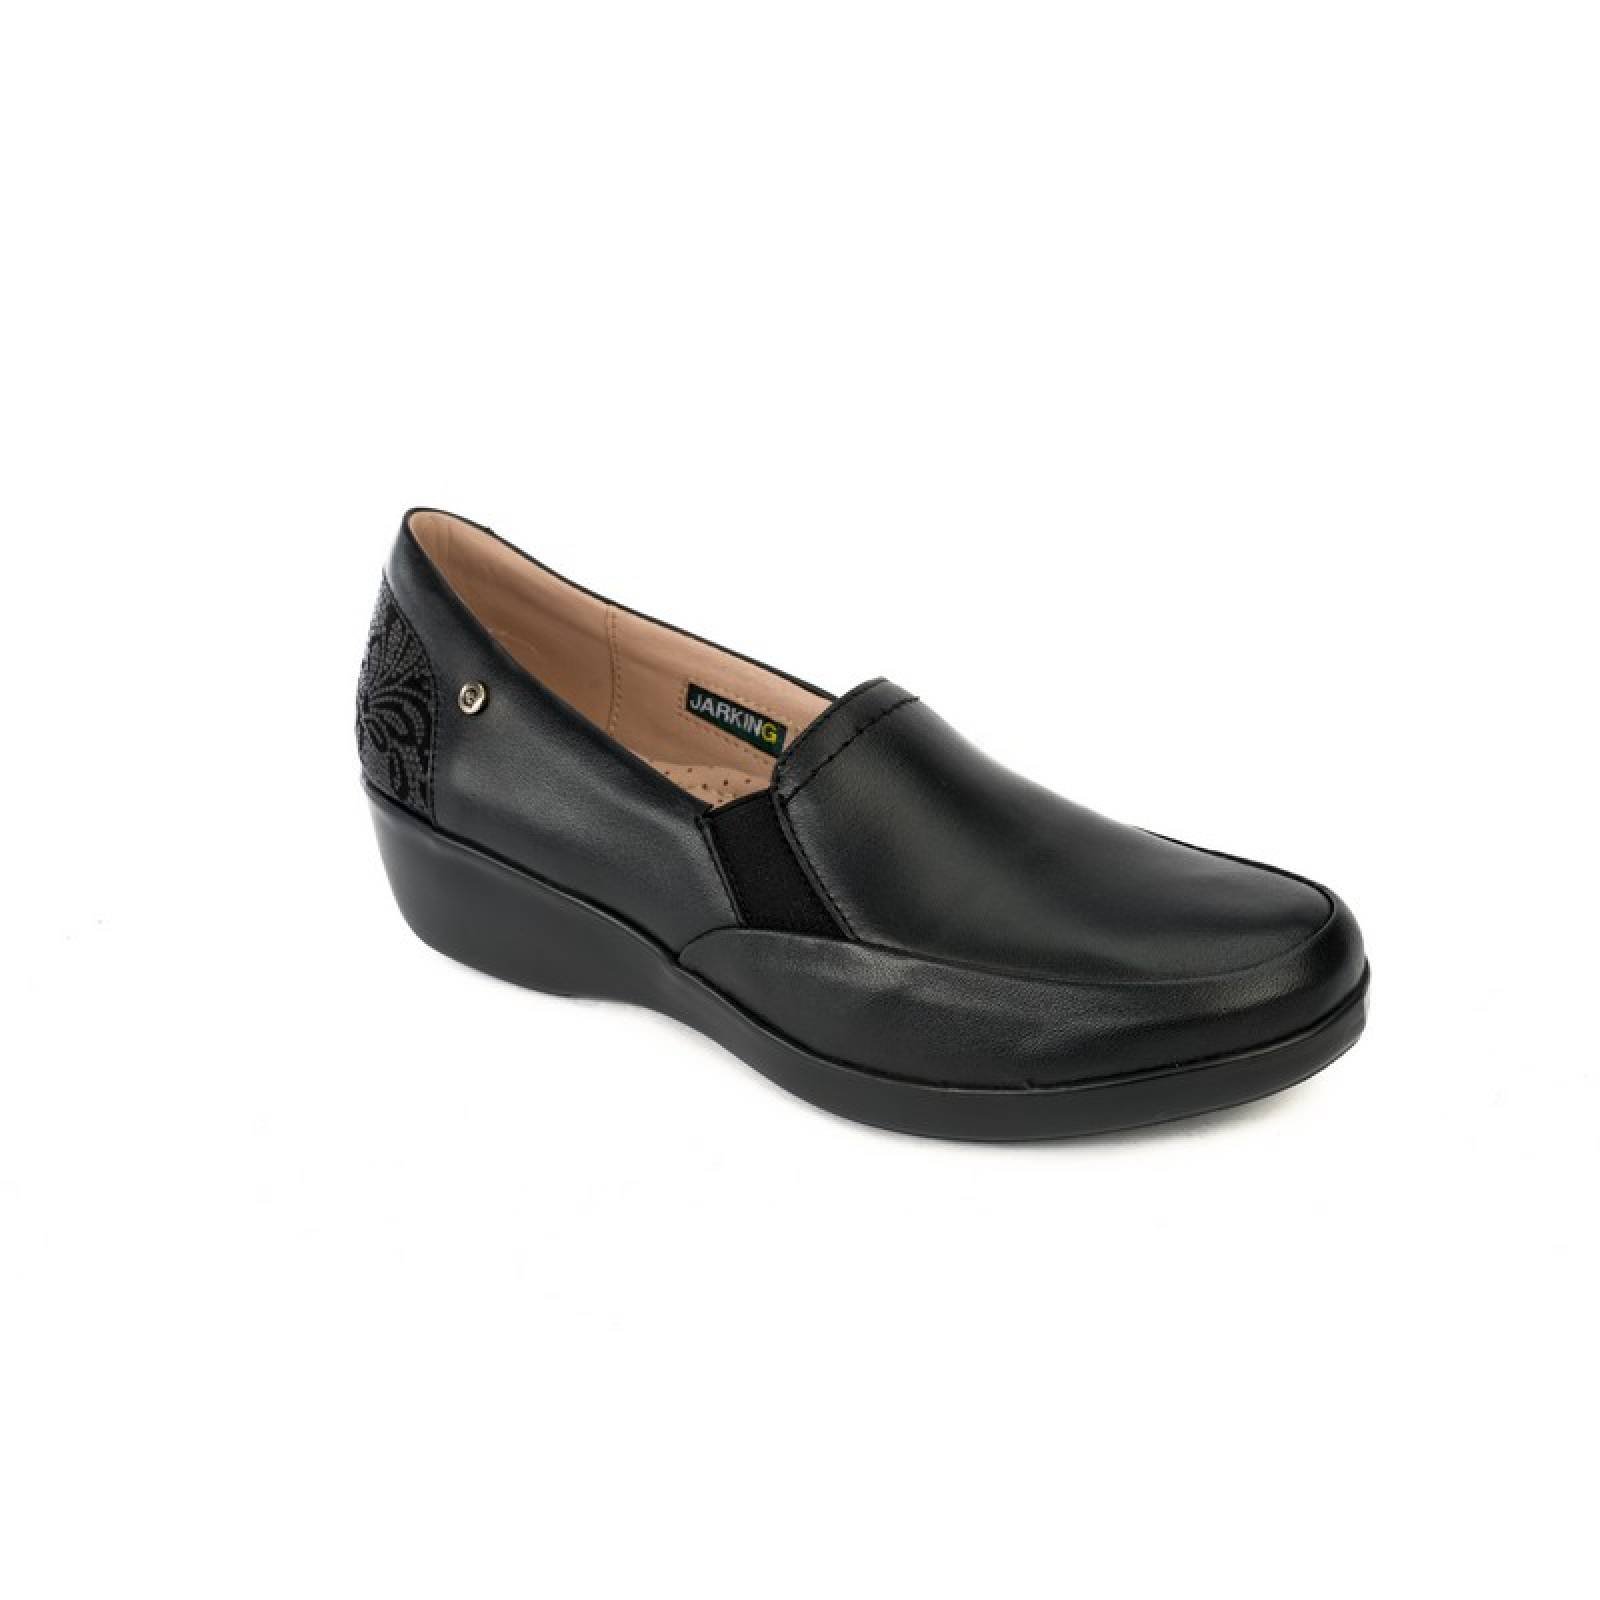 Jarking - Zapato Casual Negro Extra Ligero con Cuña y Elásticos en Empeine para Dama